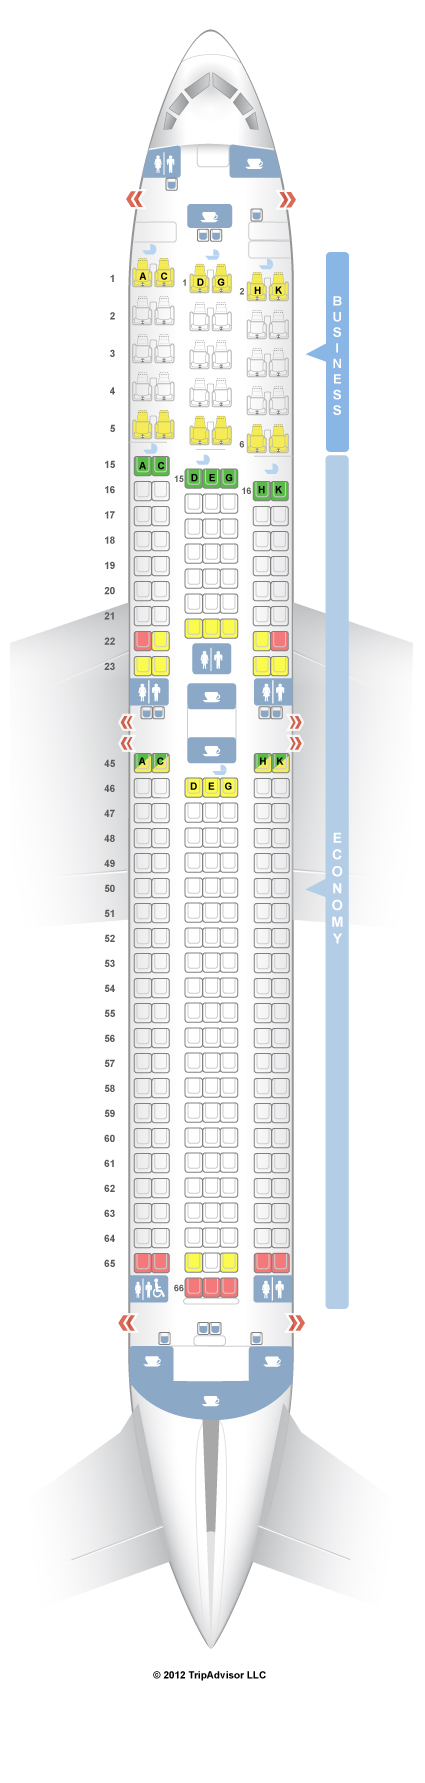 Air Canada Aircraft 763 Seating Chart